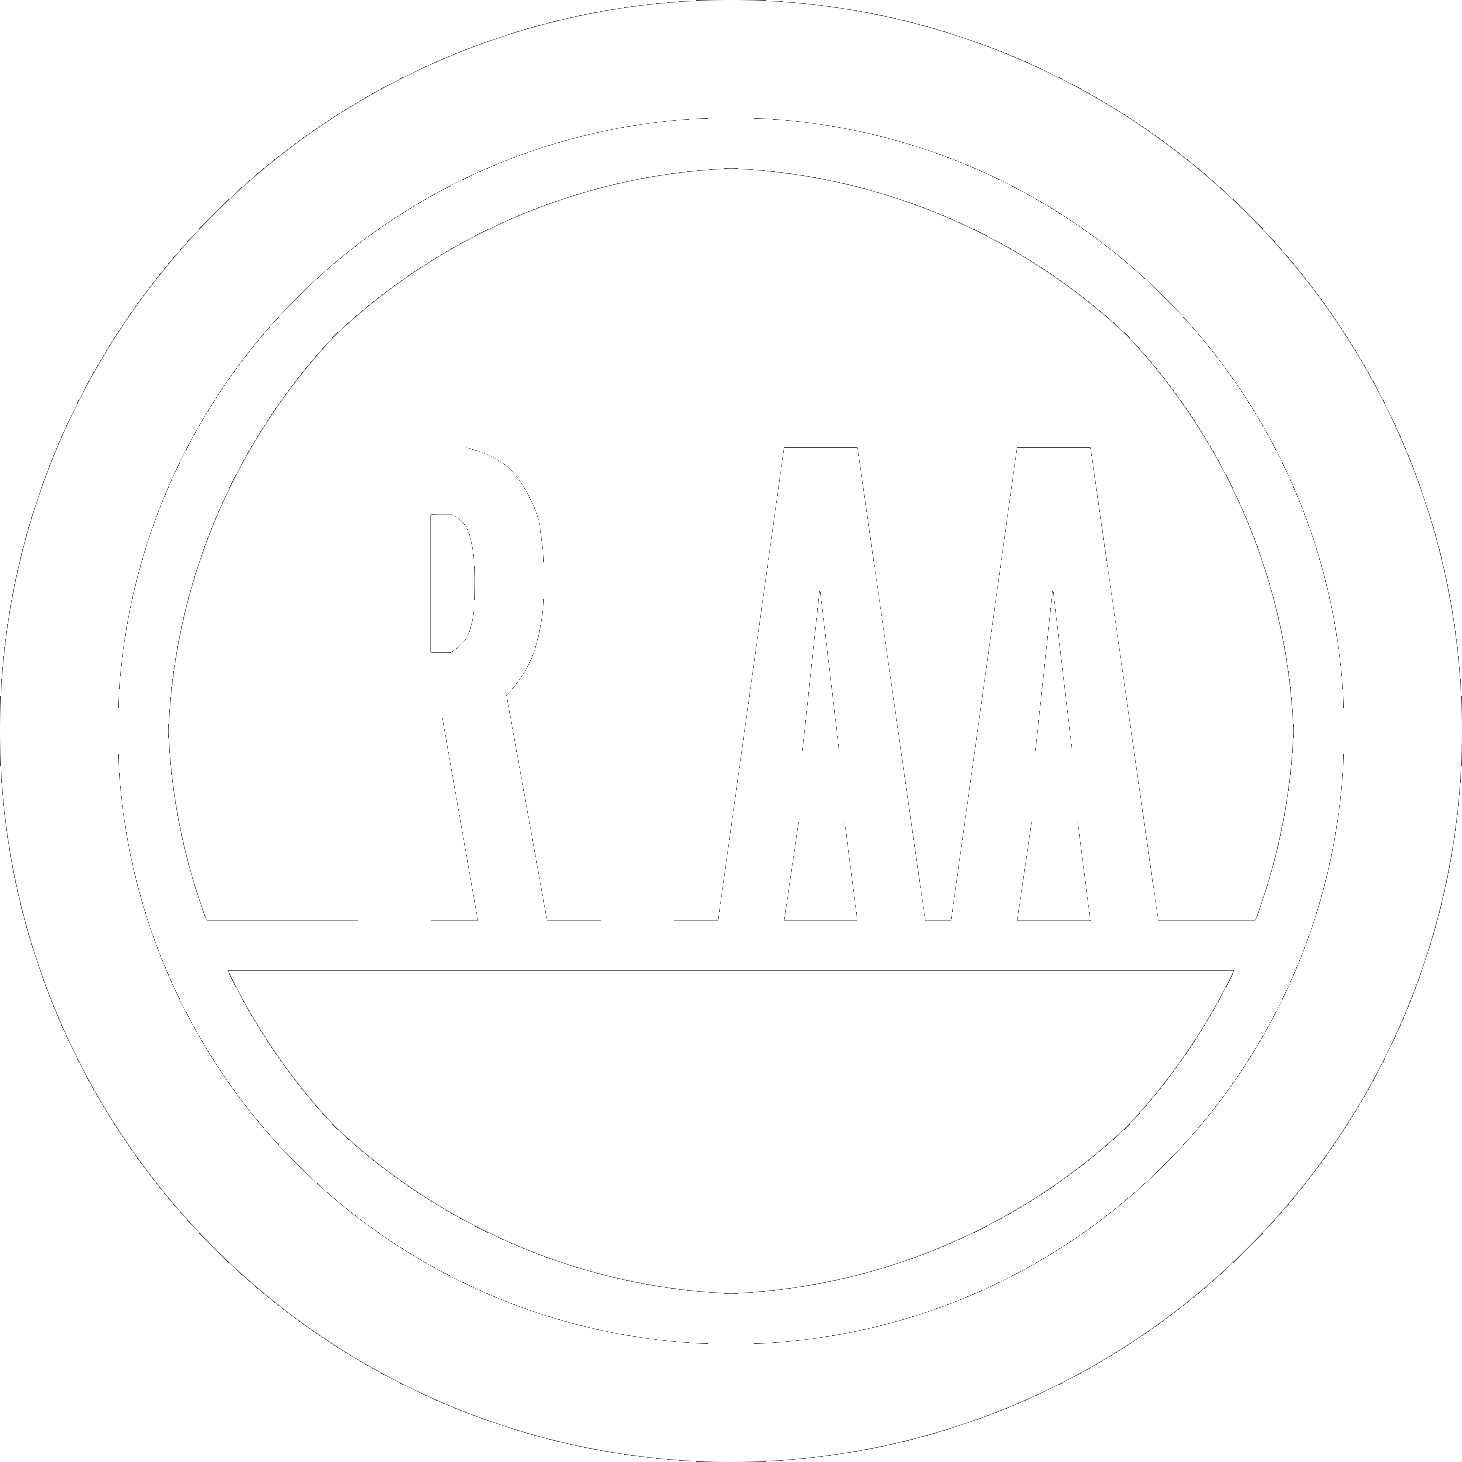 RIAA LOGO